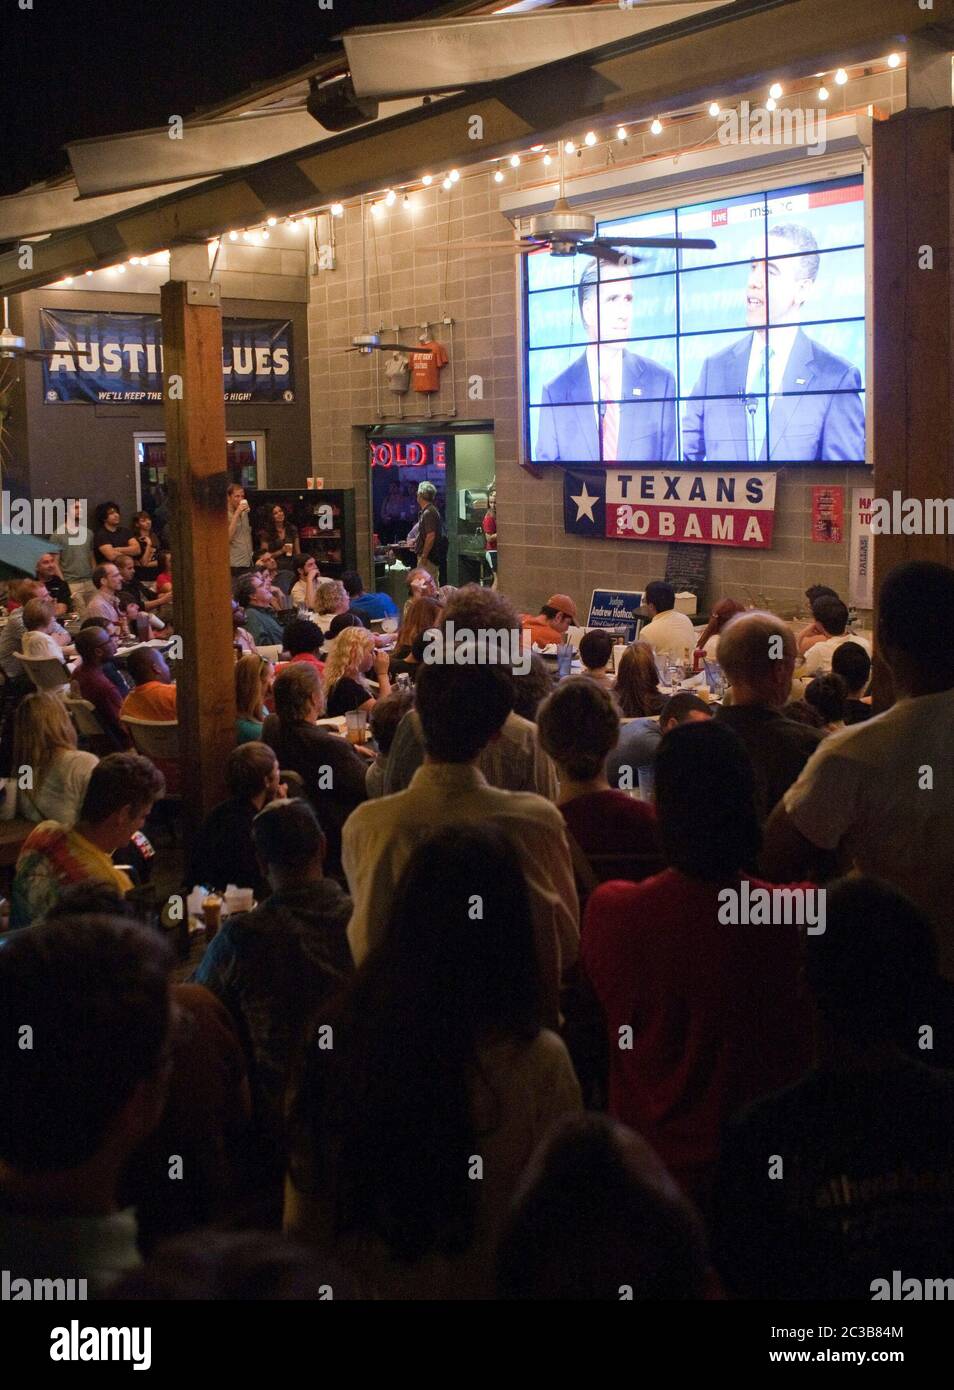 Austin, Texas, USA, 3. Oktober 2012: Große Gruppe besucht eine Beobachtungsparty für die erste Mitt Romney/Barack Obama Präsidentschaftsdebatte im Fernsehen aus einem Restaurant in der Nähe des Campus der University of Teas. ©MKC / Daemmrich Photos Stockfoto